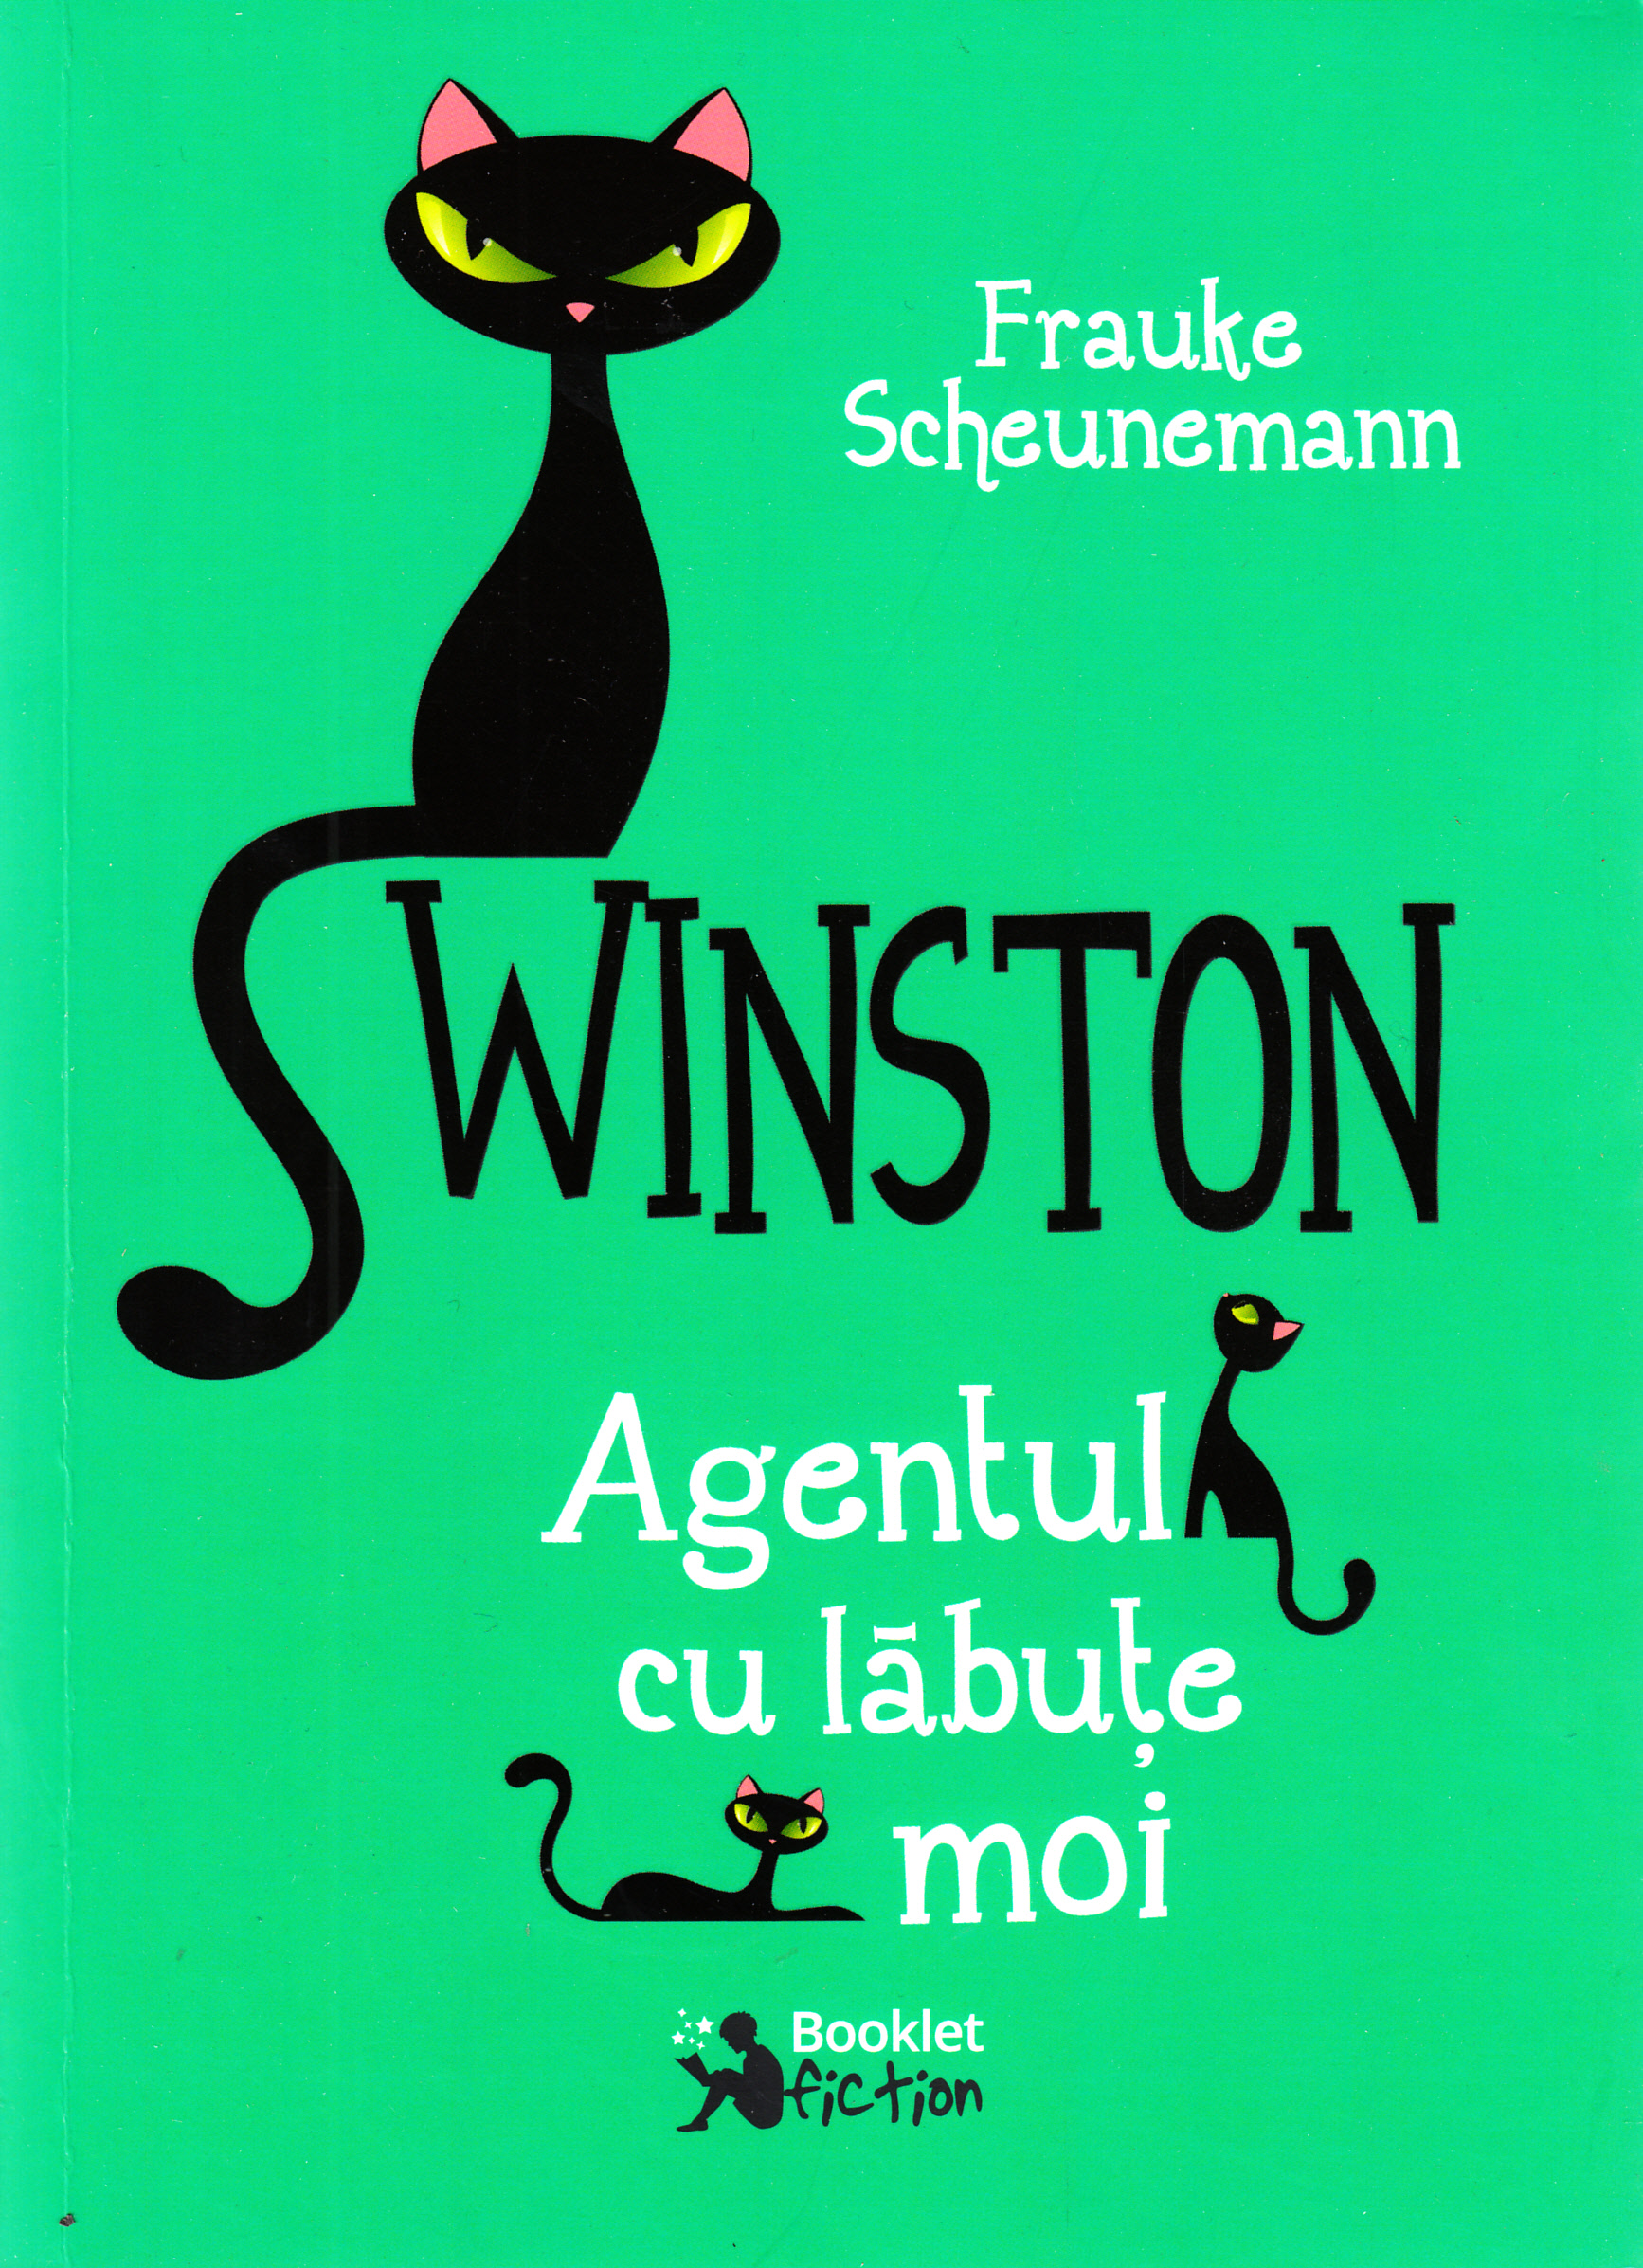 Winston (vol. II) Agentul cu labute moi